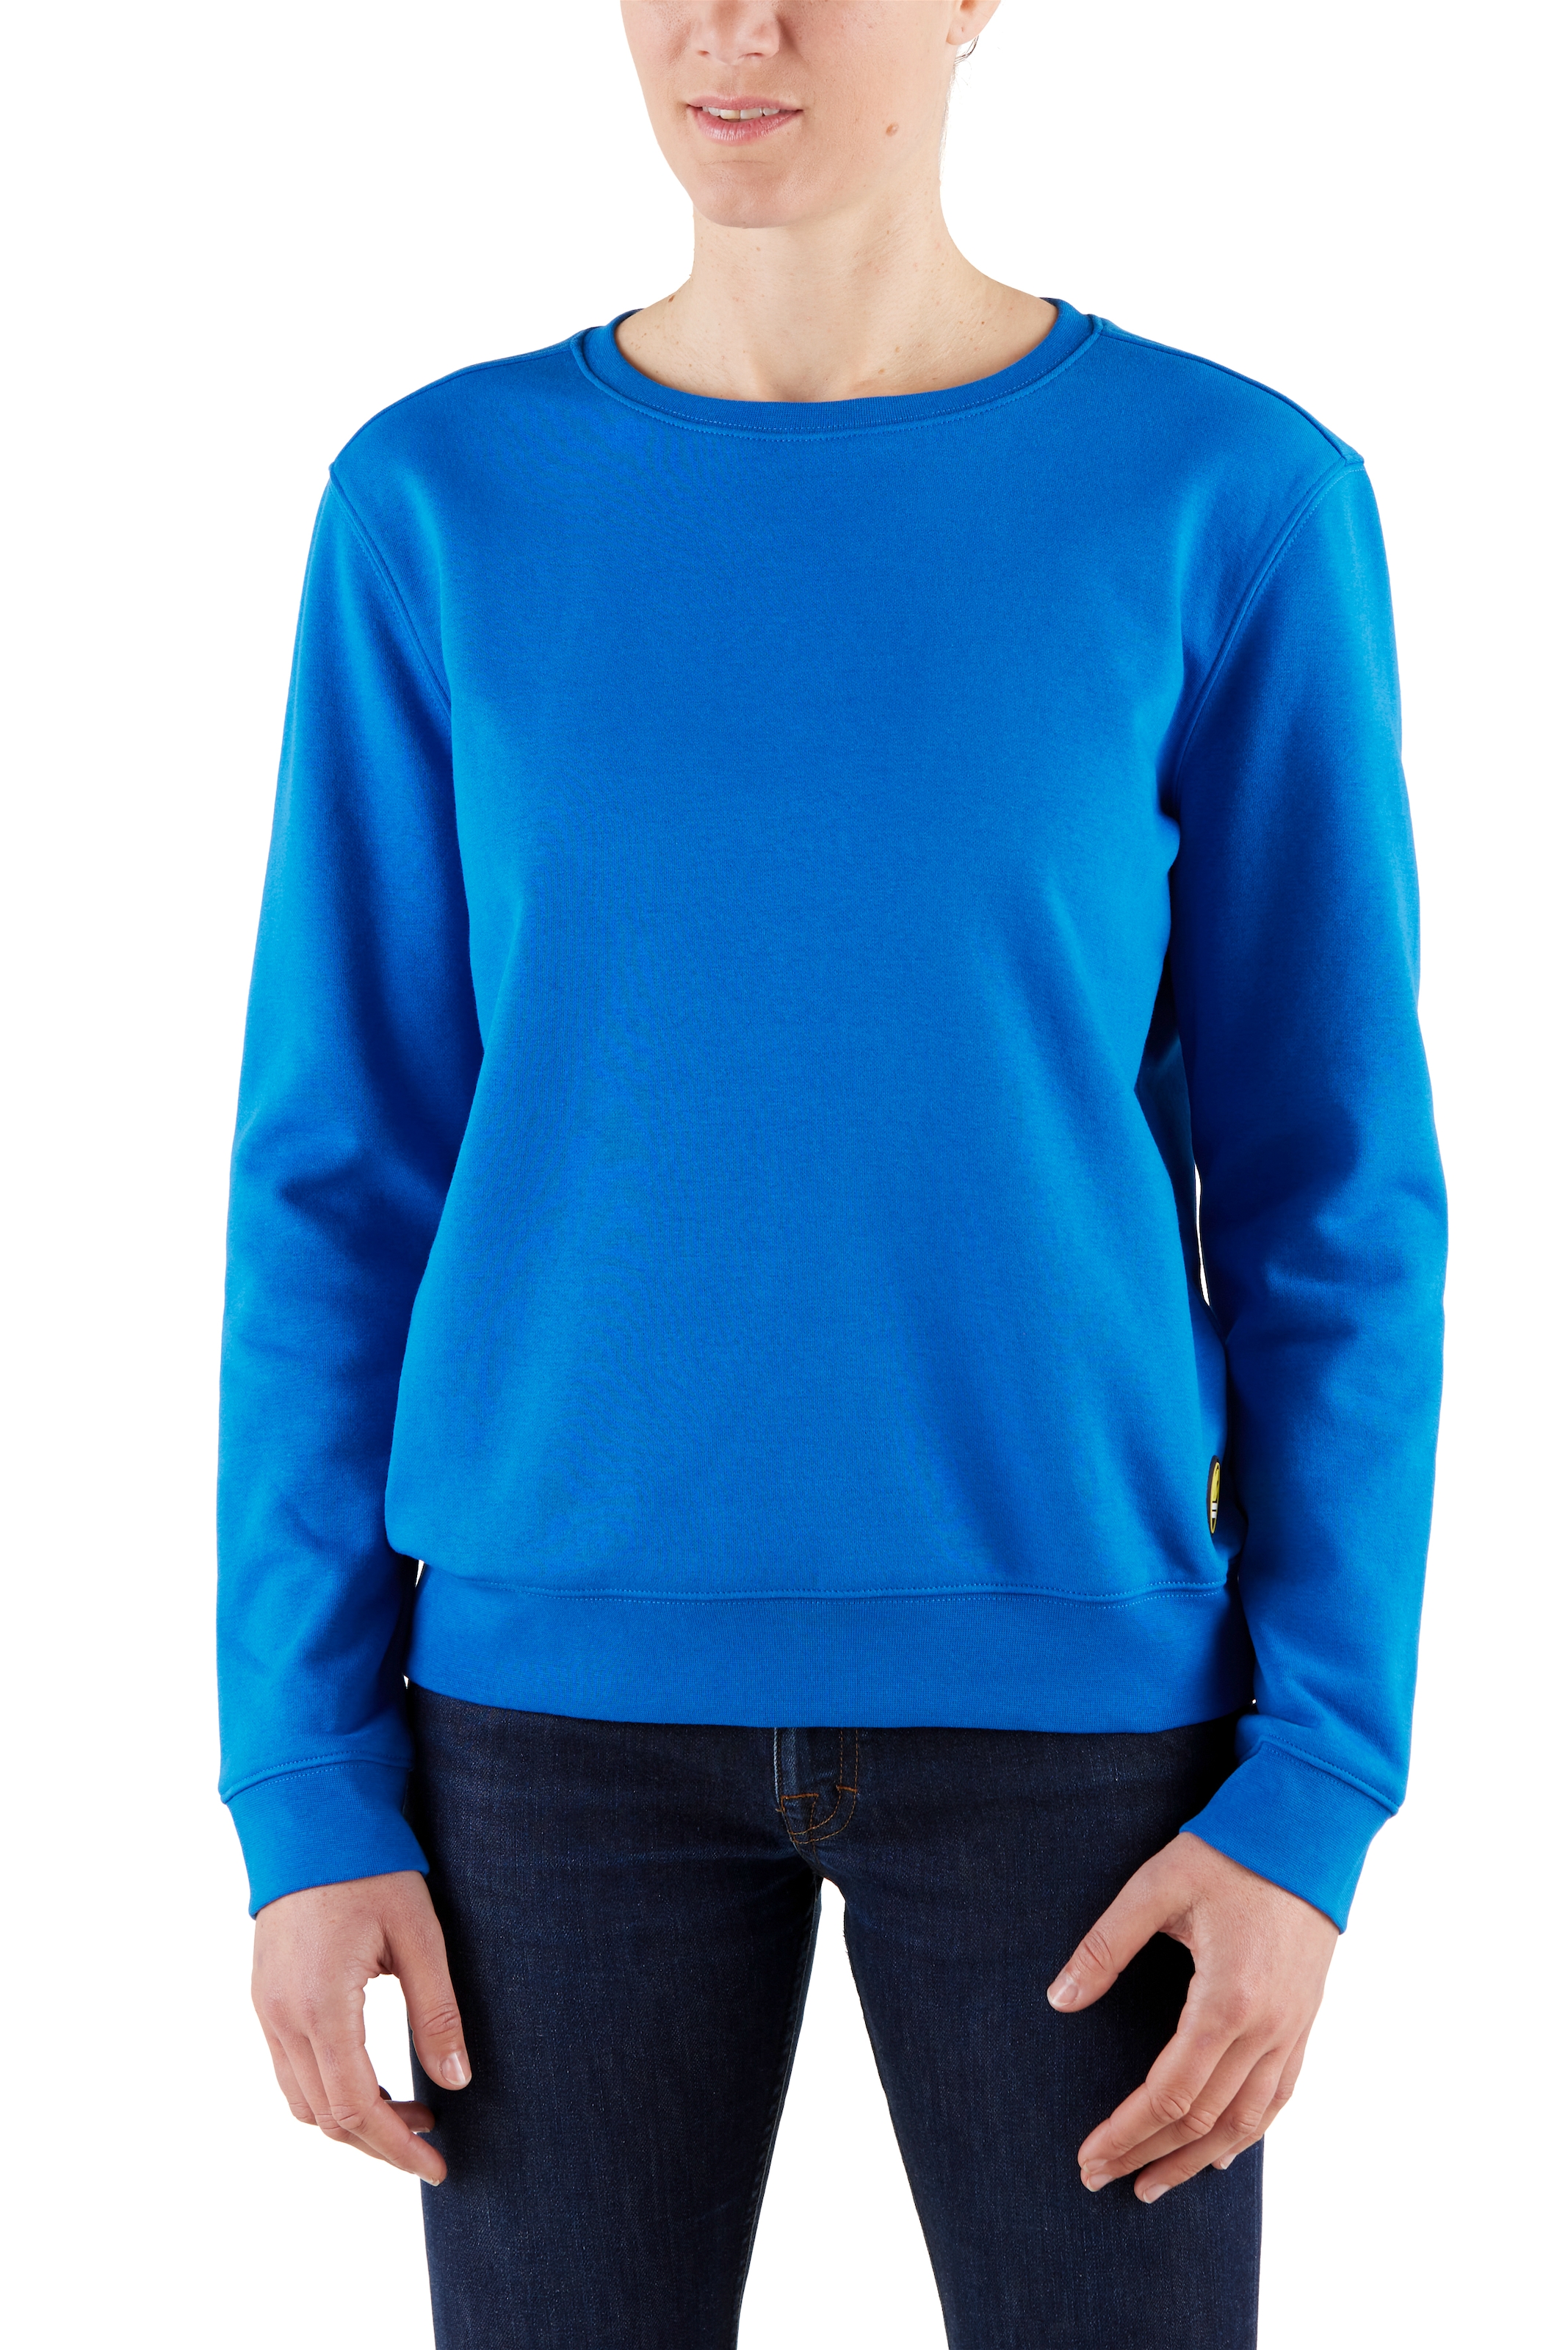 Northern Country locker | Baumwollmix, trägt Damen aus soften für Sweatshirt, sich und leicht kaufen für BAUR